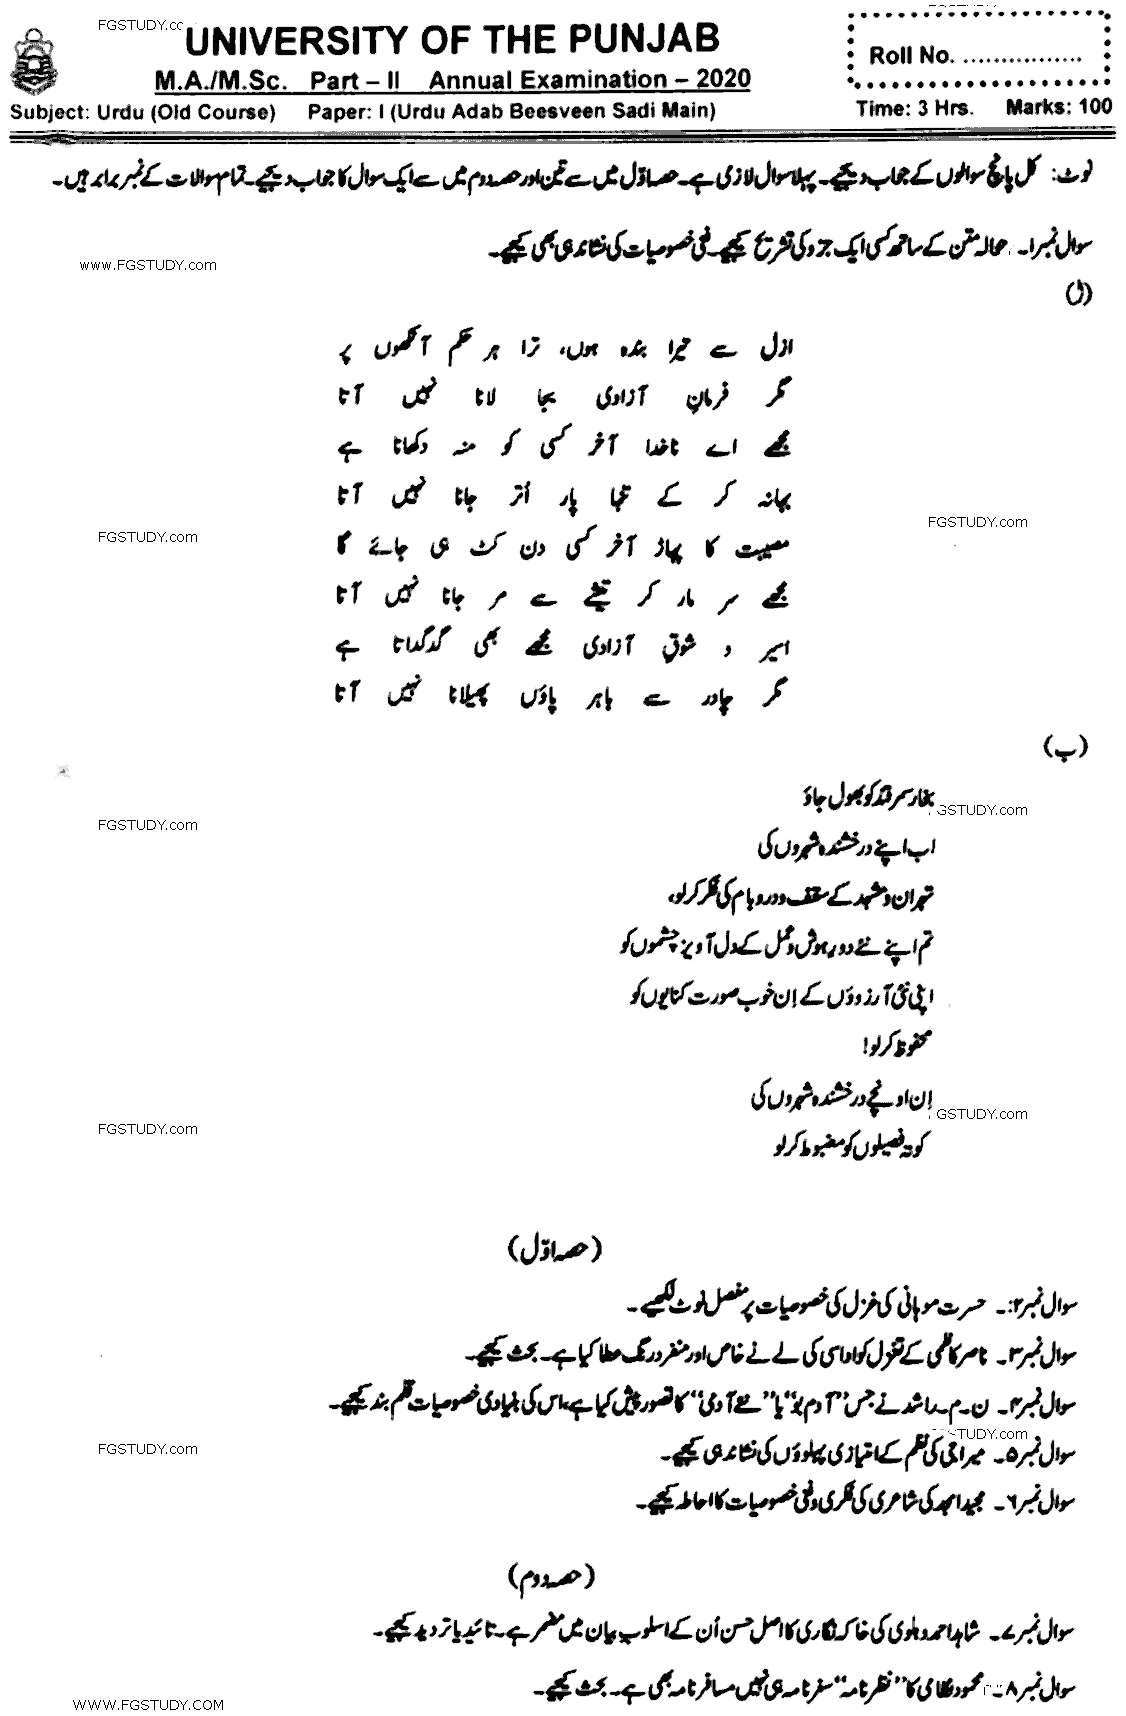 MA Part 2 Urdu Urdu Adab Beesveen Sadi Main Past Paper 2020 Punjab University